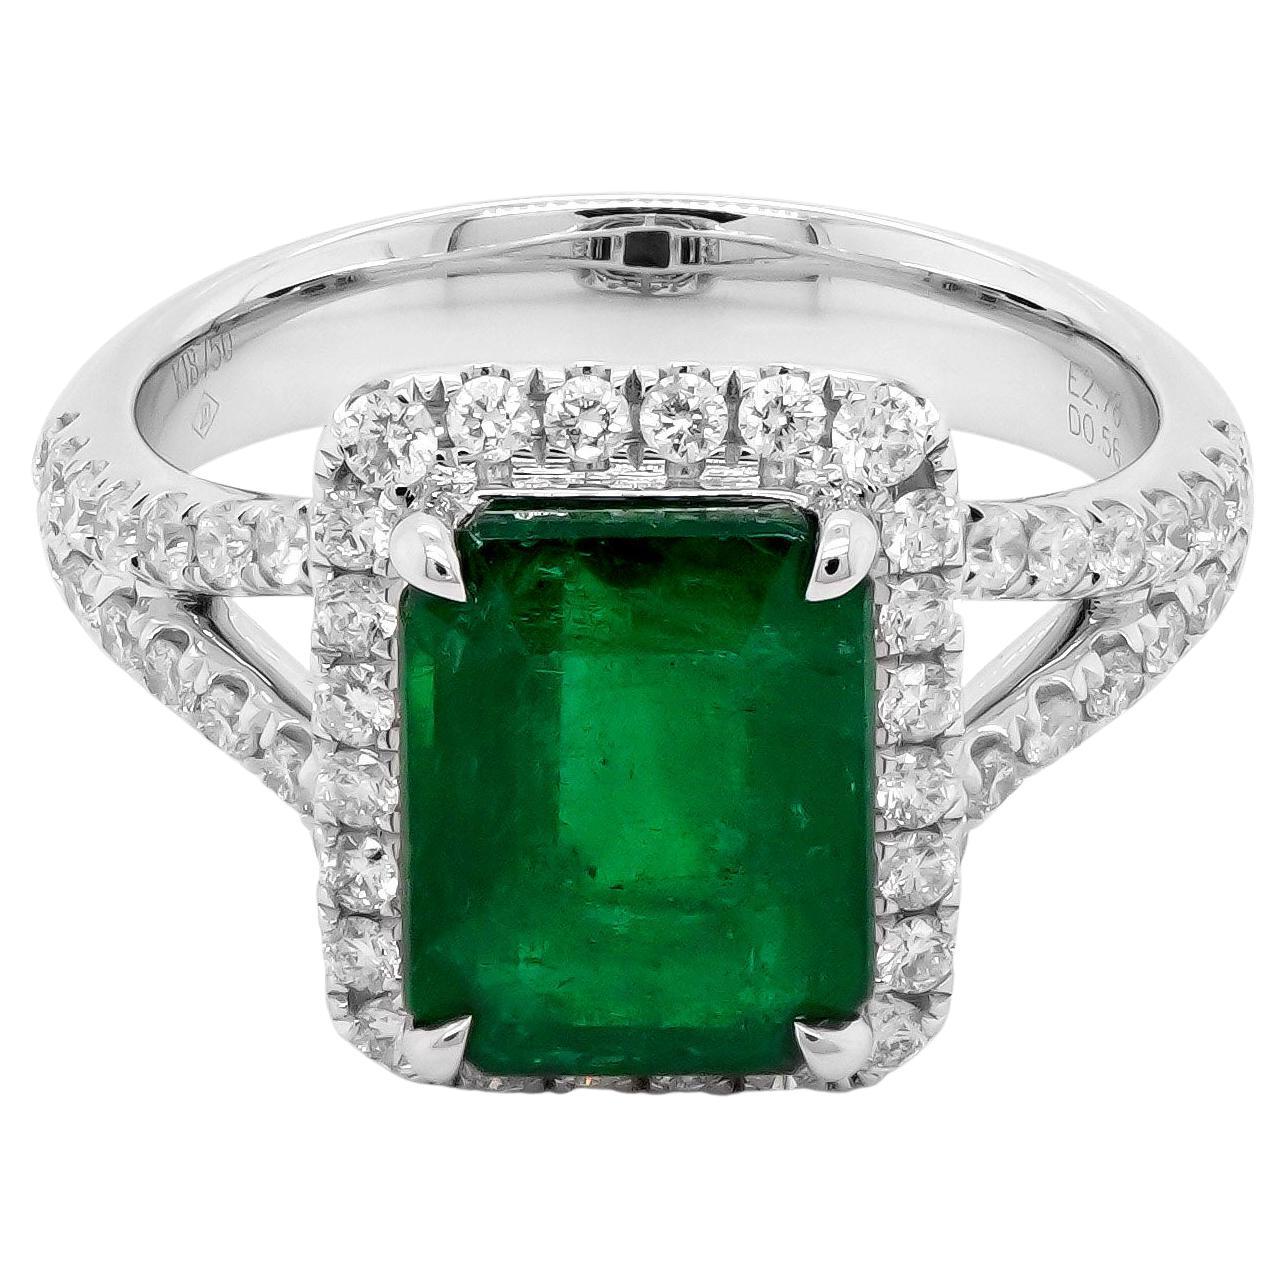 Certified 2.78 Carat Vivid Green Emerald Set Along With 0.56 Carat Diamond 18K